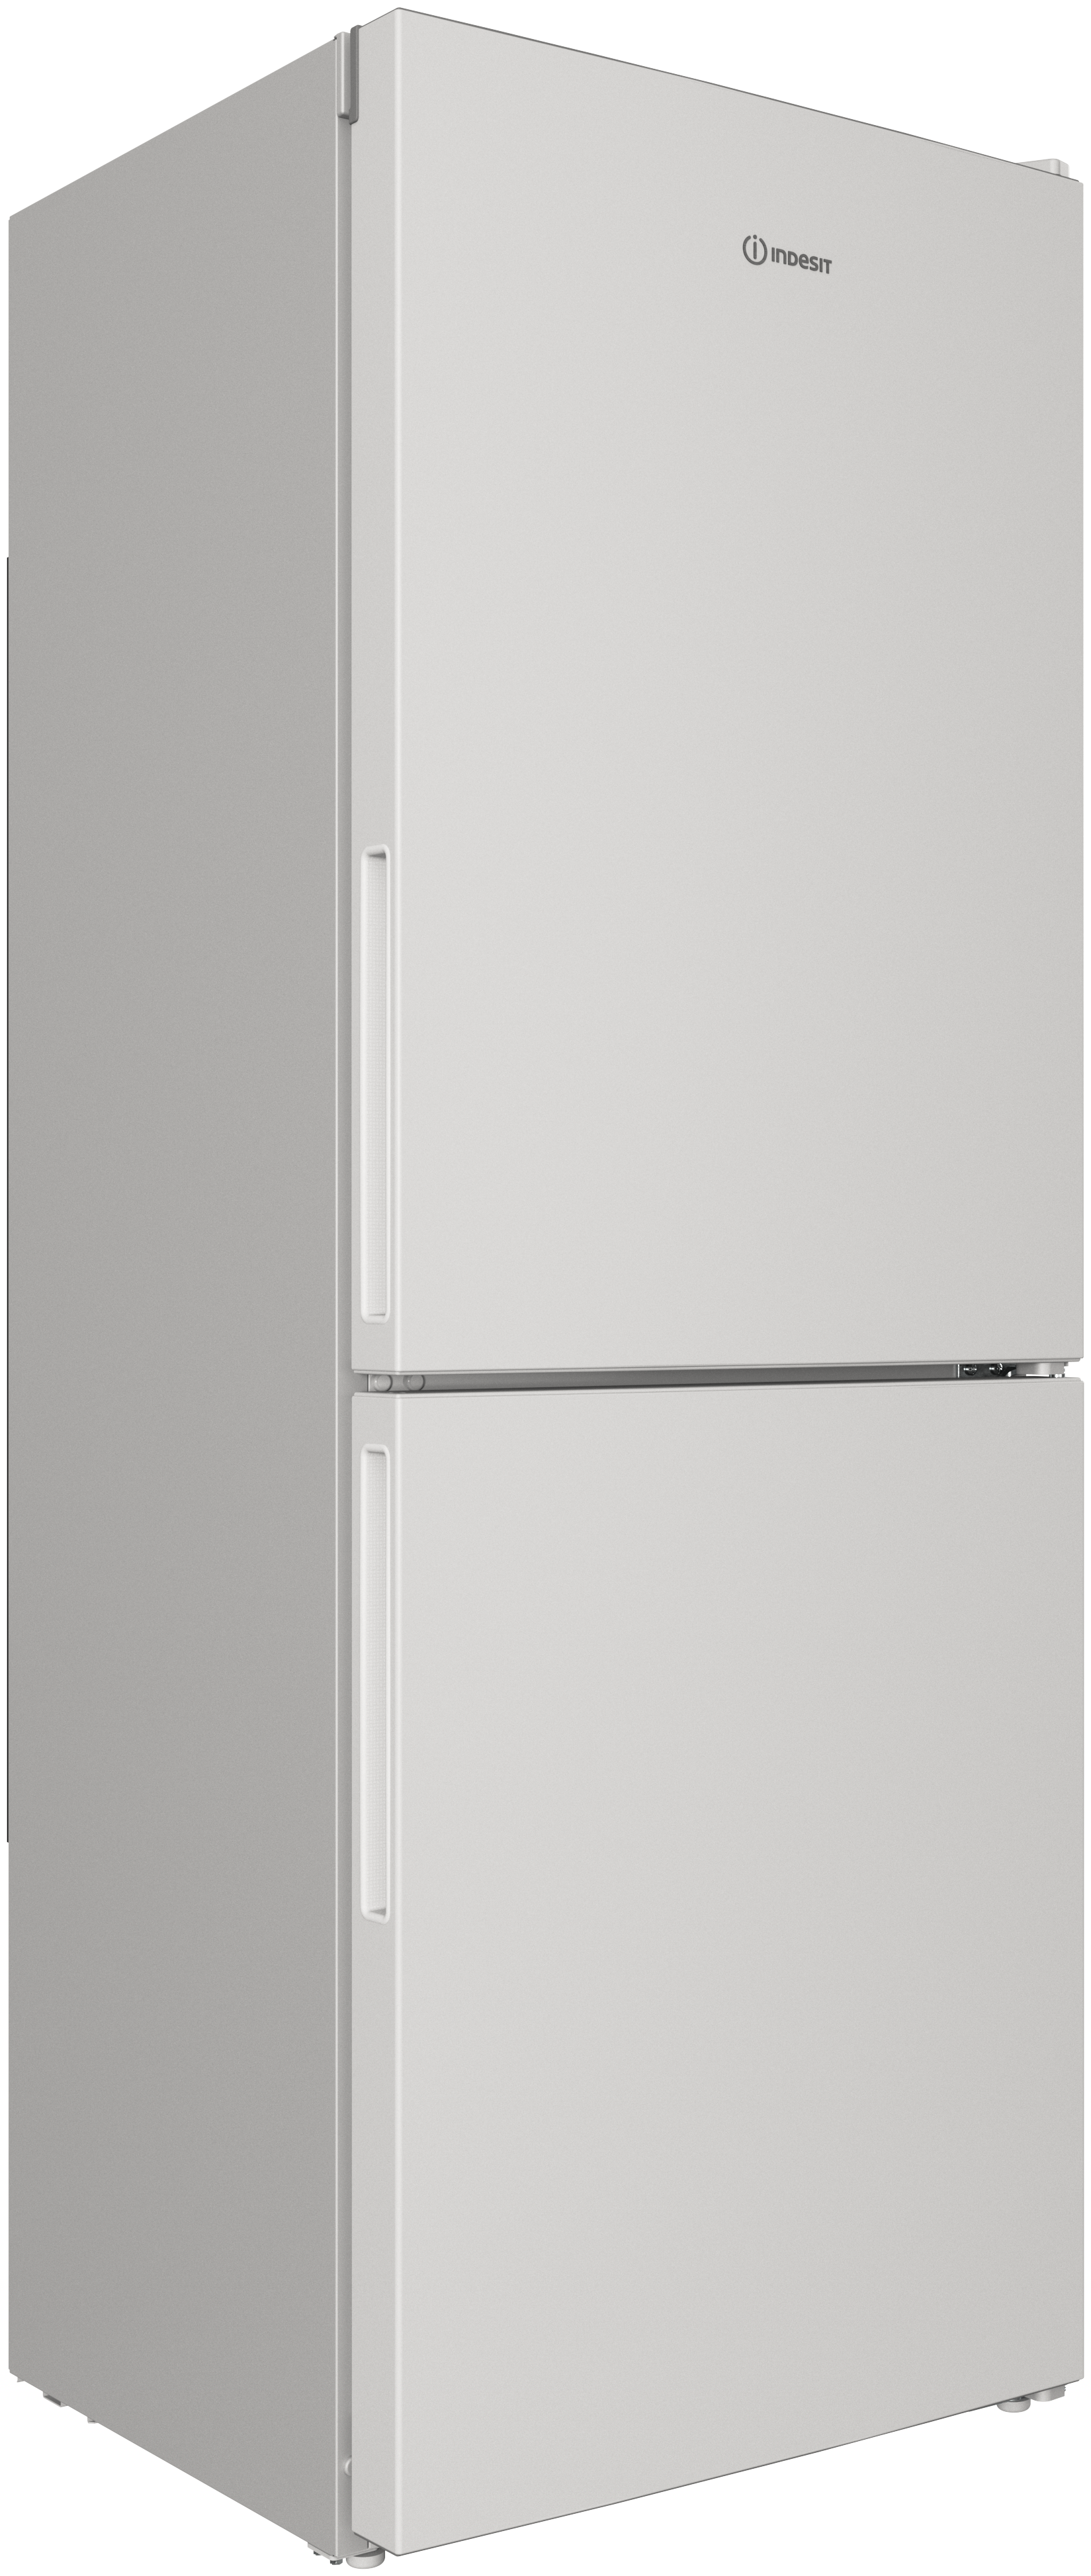 Холодильники индезит отзывы специалистов и покупателей. Холодильник Whirlpool WBE 2211 NFW.